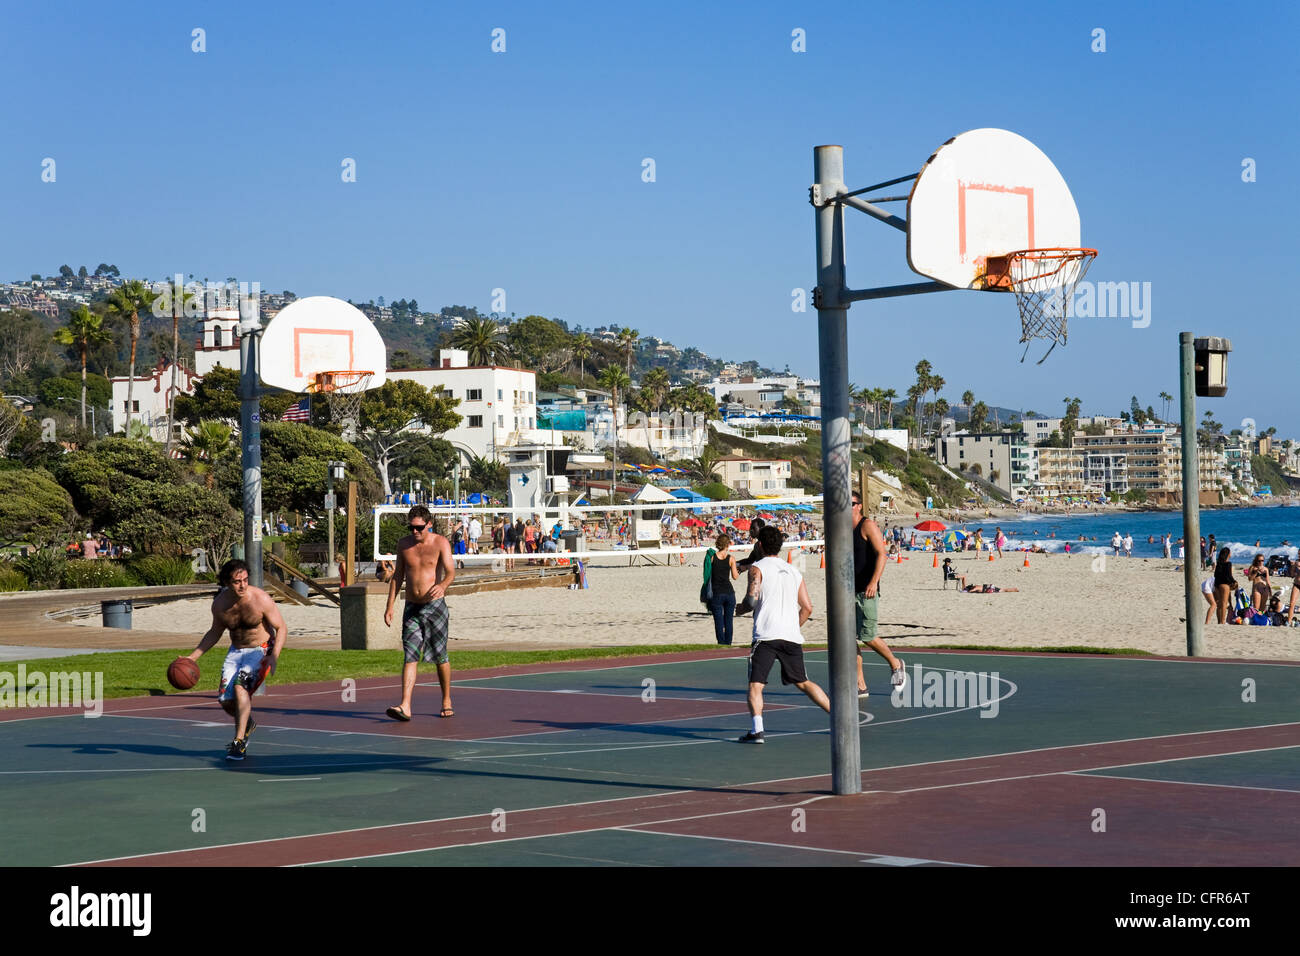 Terrain de basket à Laguna Beach, Orange County, Californie, États-Unis d'Amérique, Amérique du Nord Banque D'Images